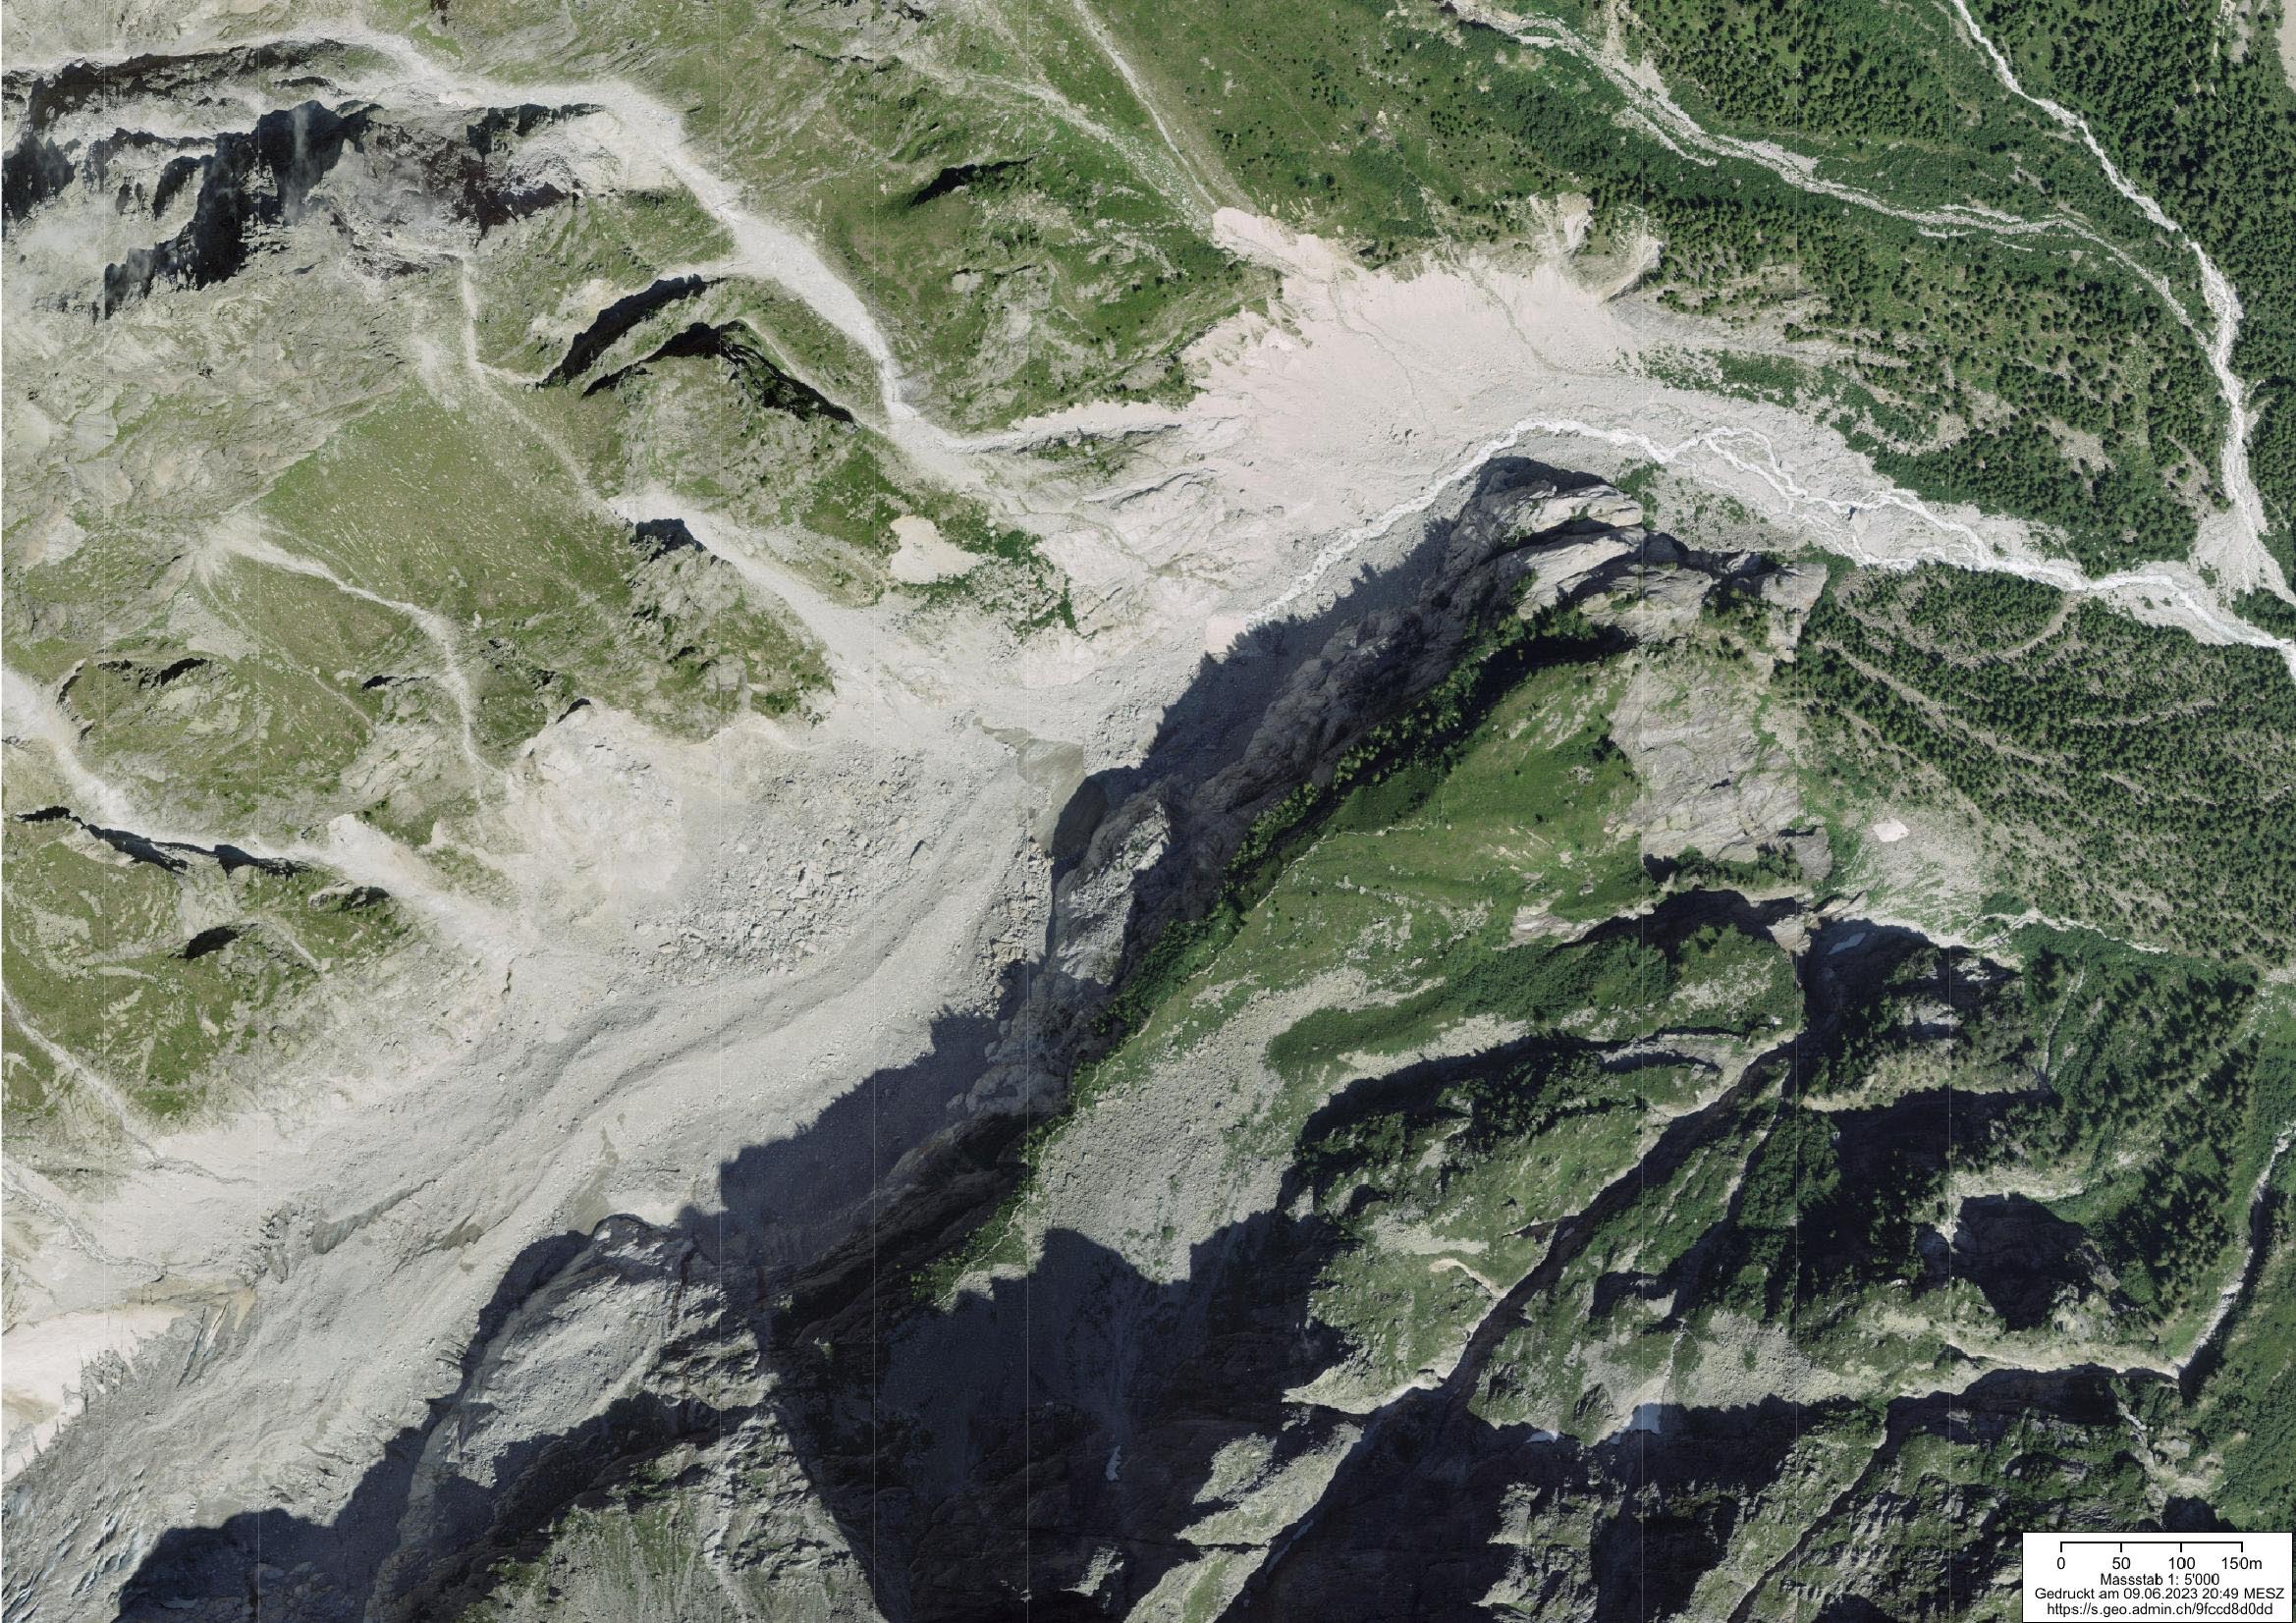 De tong van de Glacier de Saleinaz in 1988 (links) en 2020. Bron: swisstopo Zeitreise.